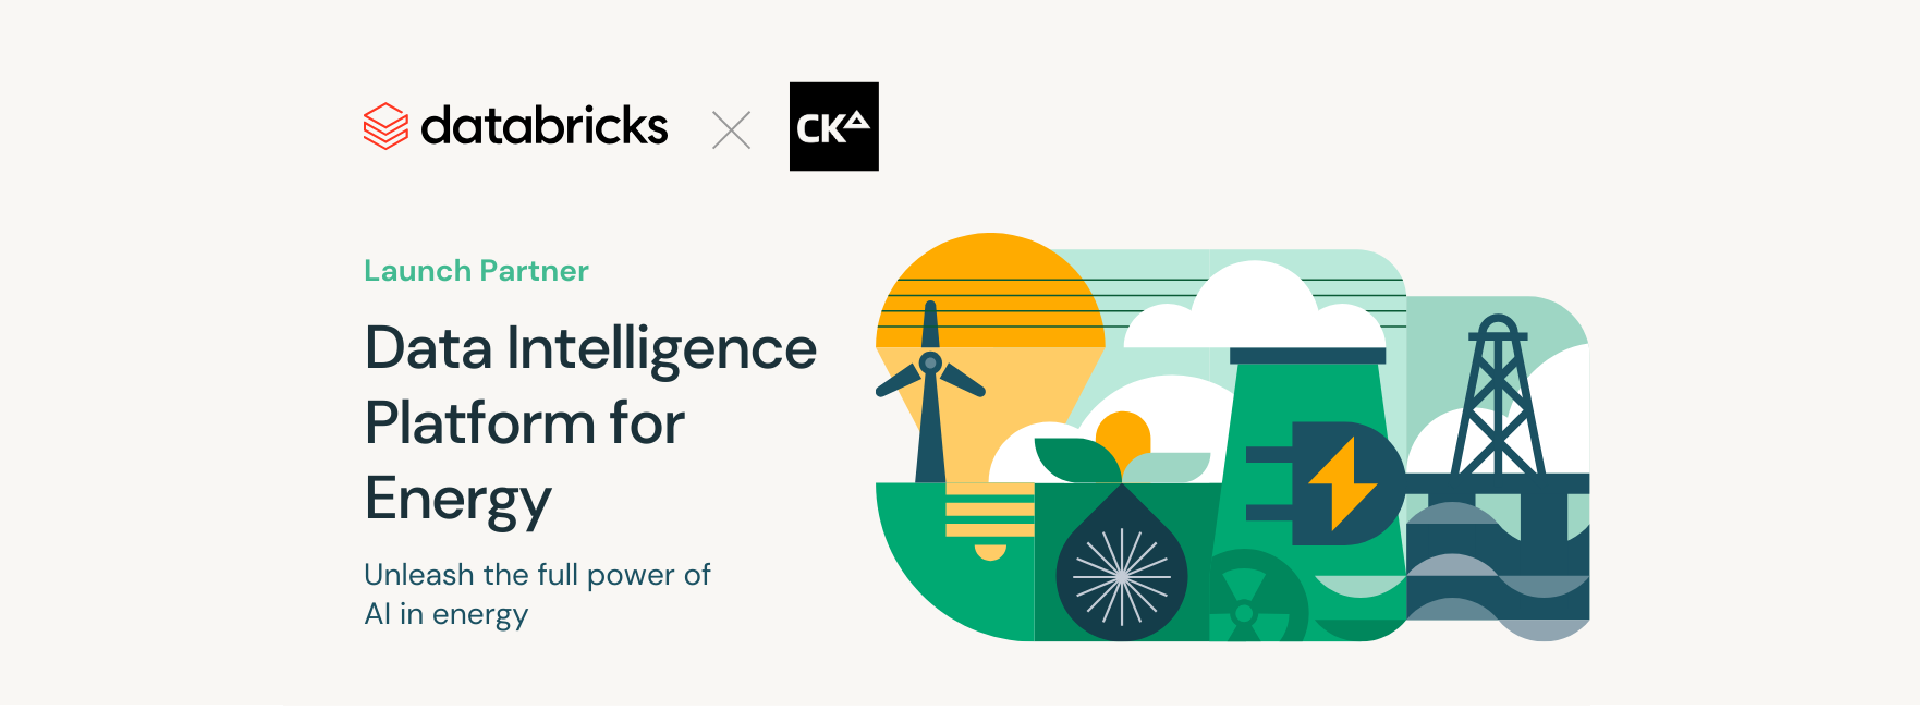 CKDelta named as strategic partner in Databricks Data Intelligence Platform for Energy launch